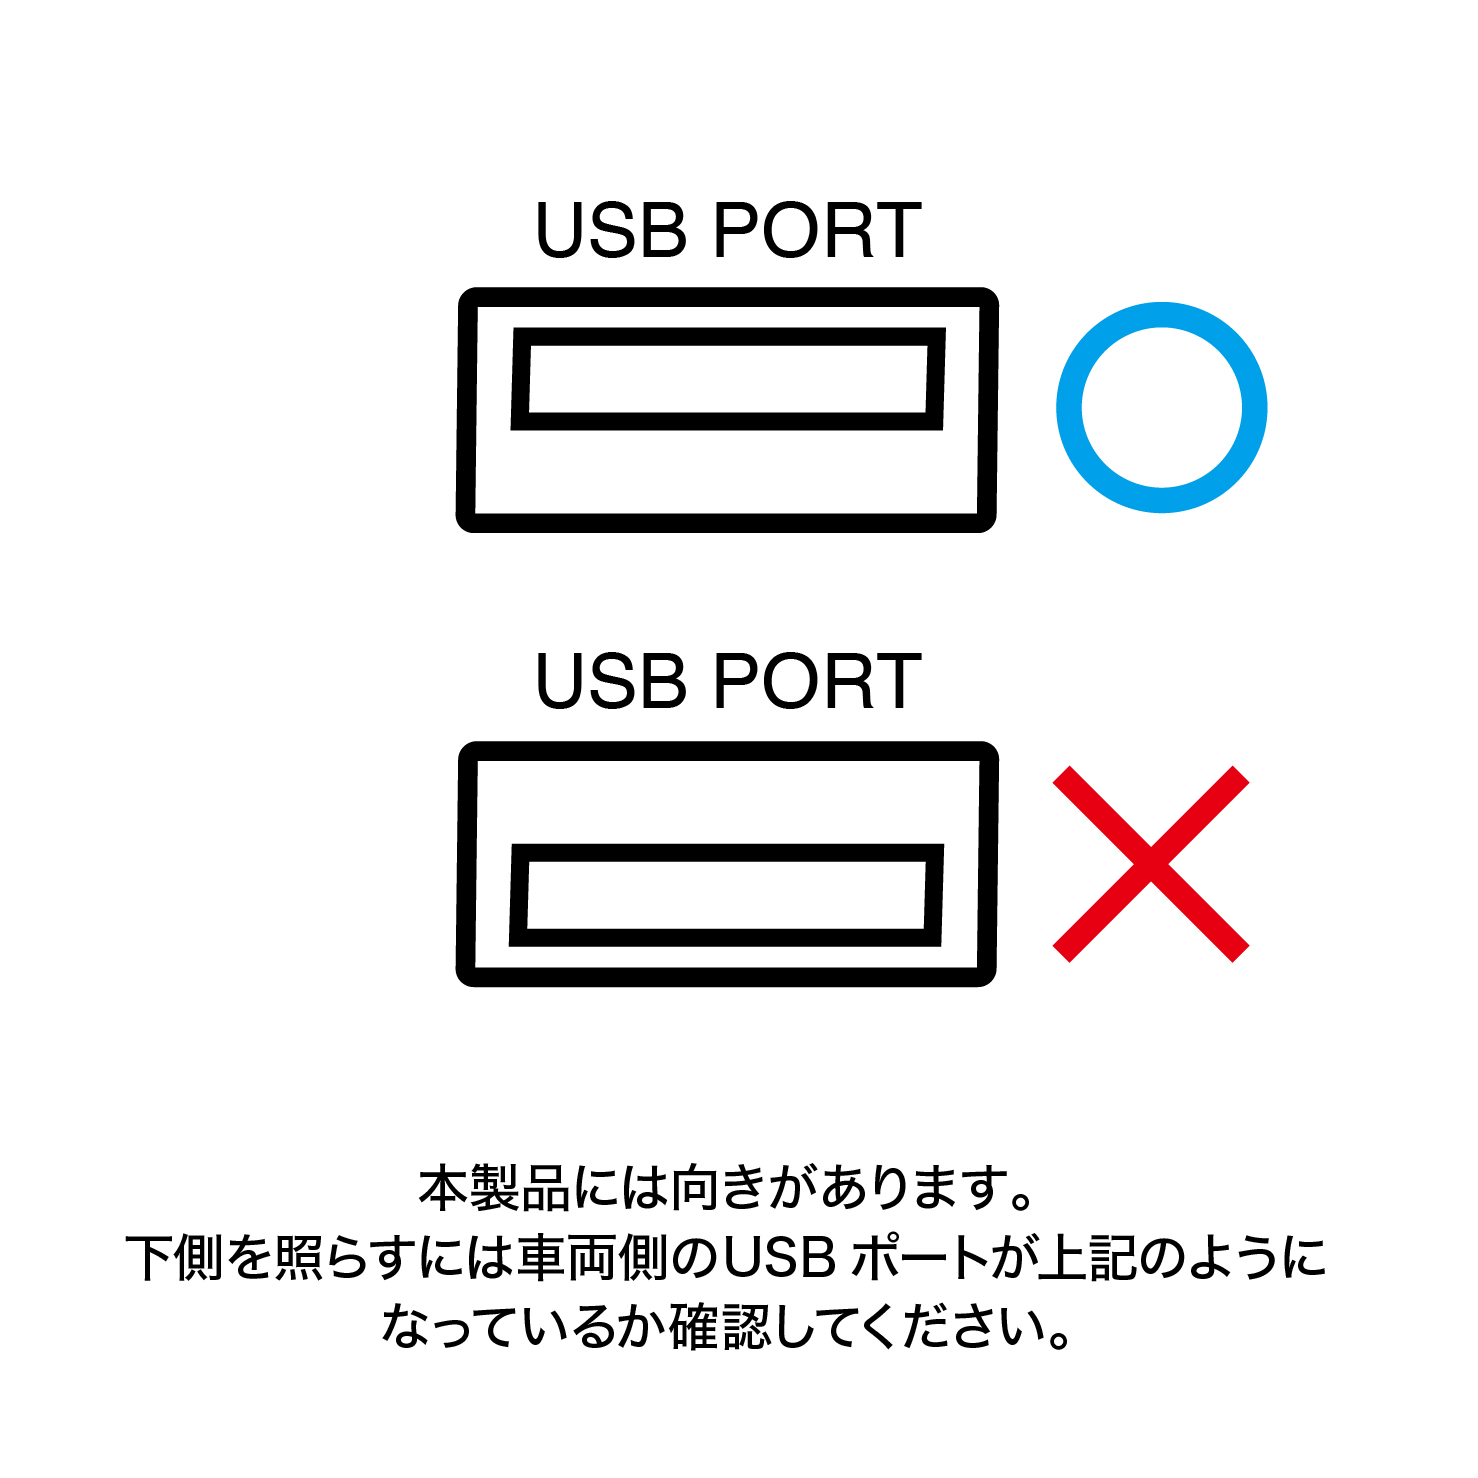 USBポート向きの注意